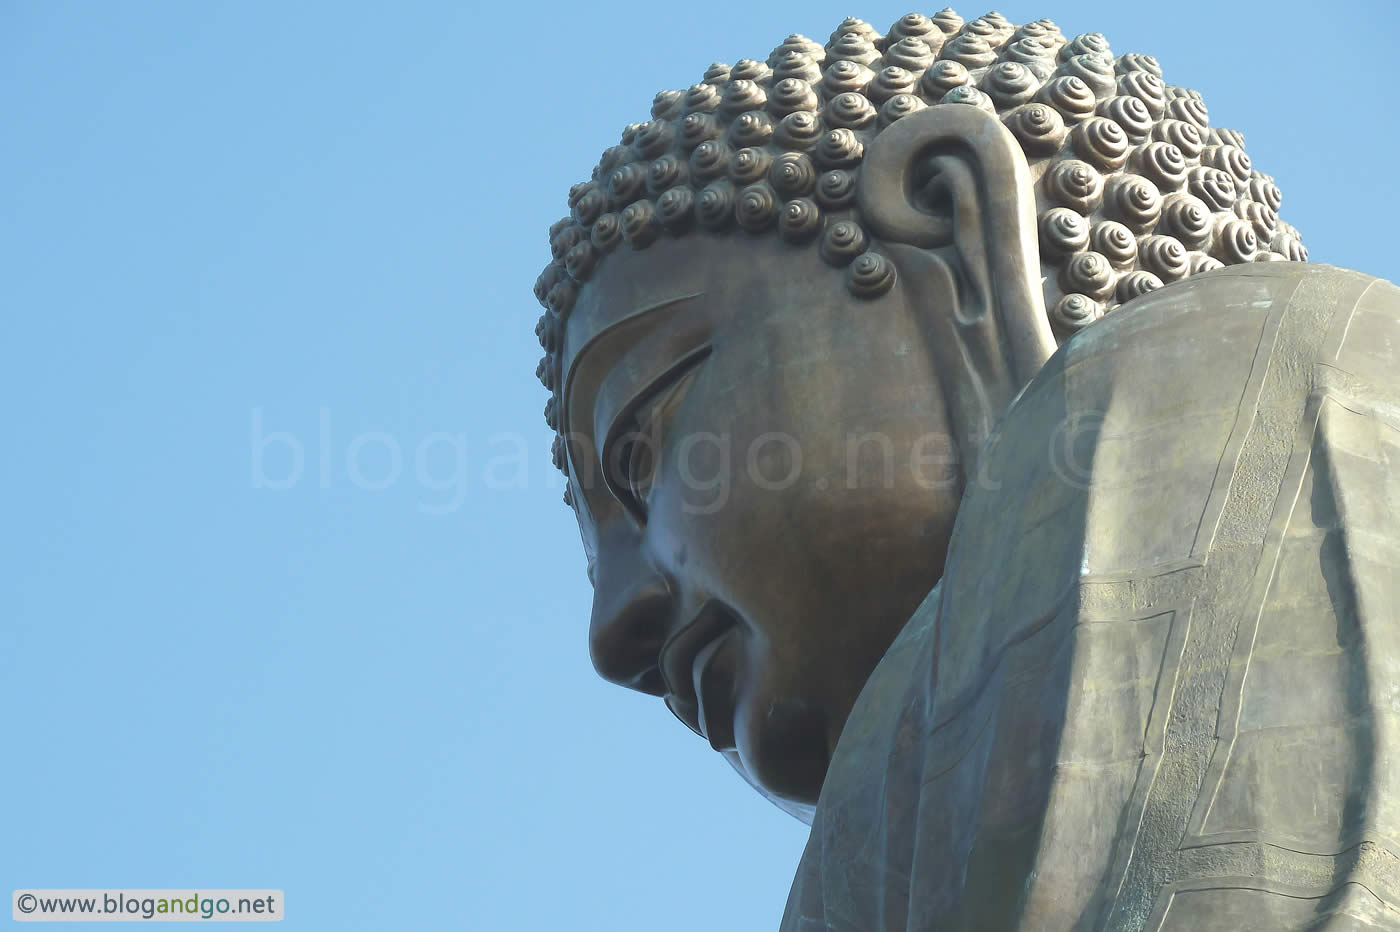 Ngong Ping - The Buddha